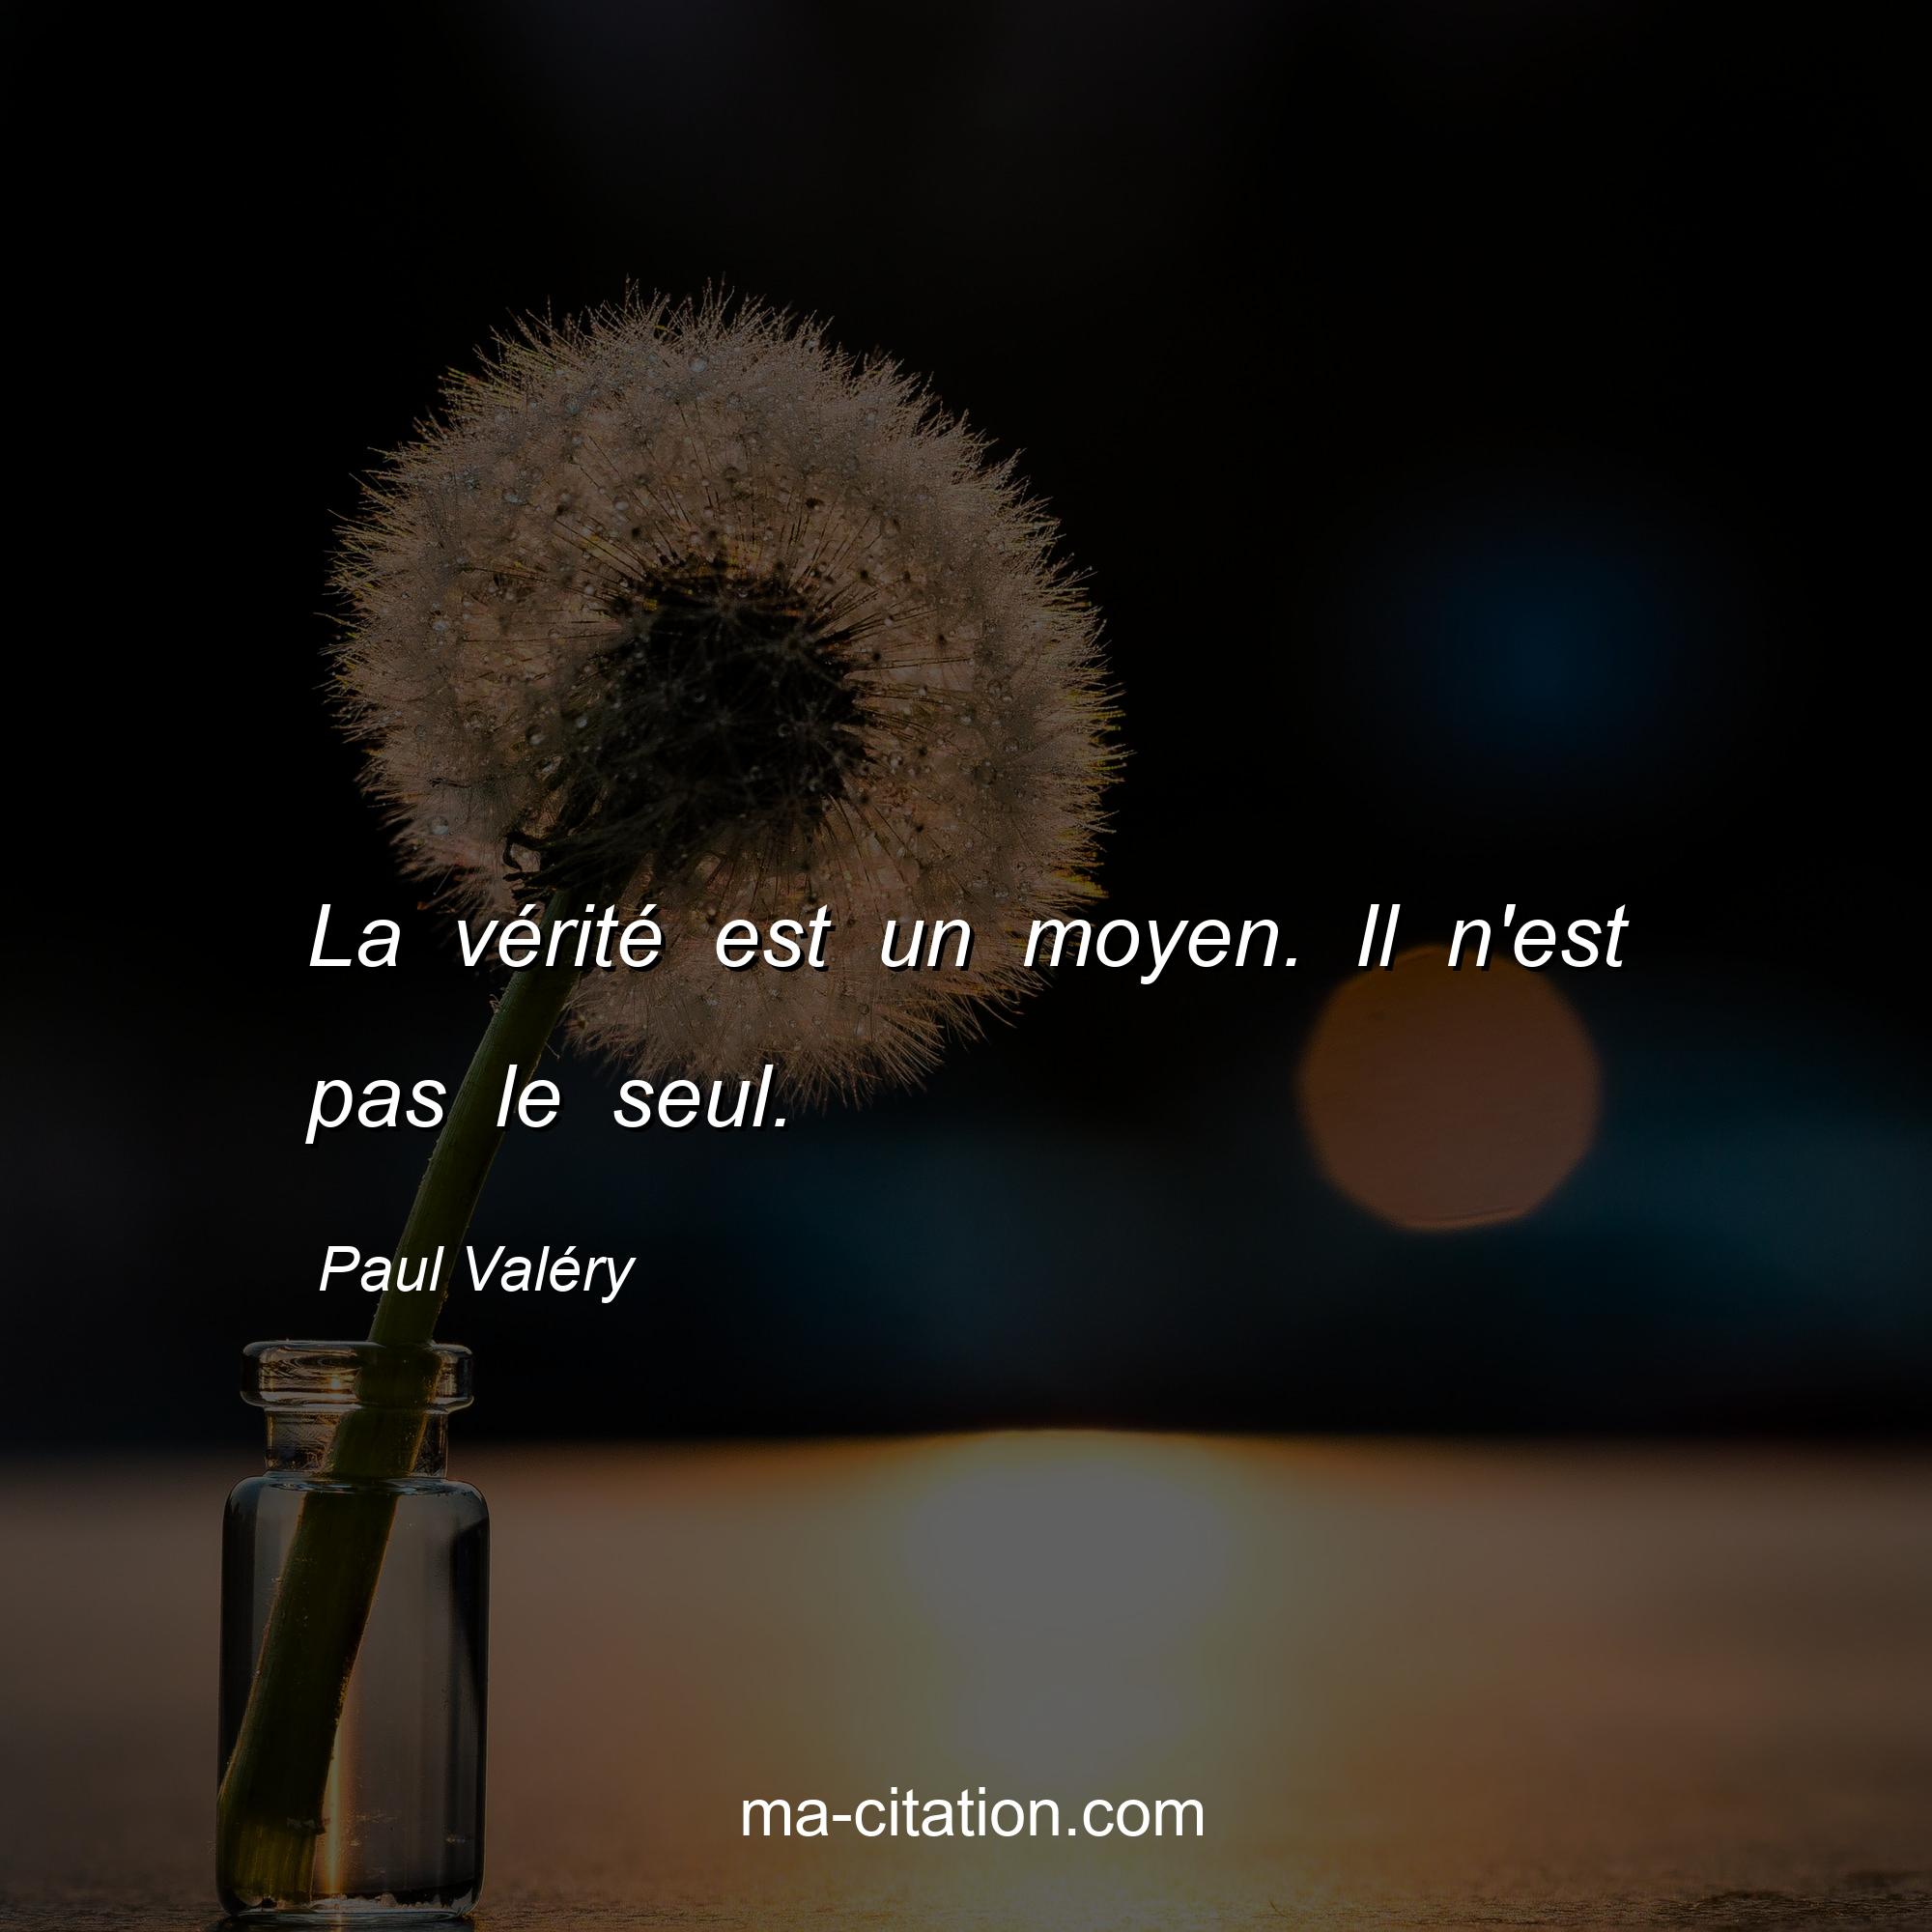 Paul Valéry : La vérité est un moyen. Il n'est pas le seul.